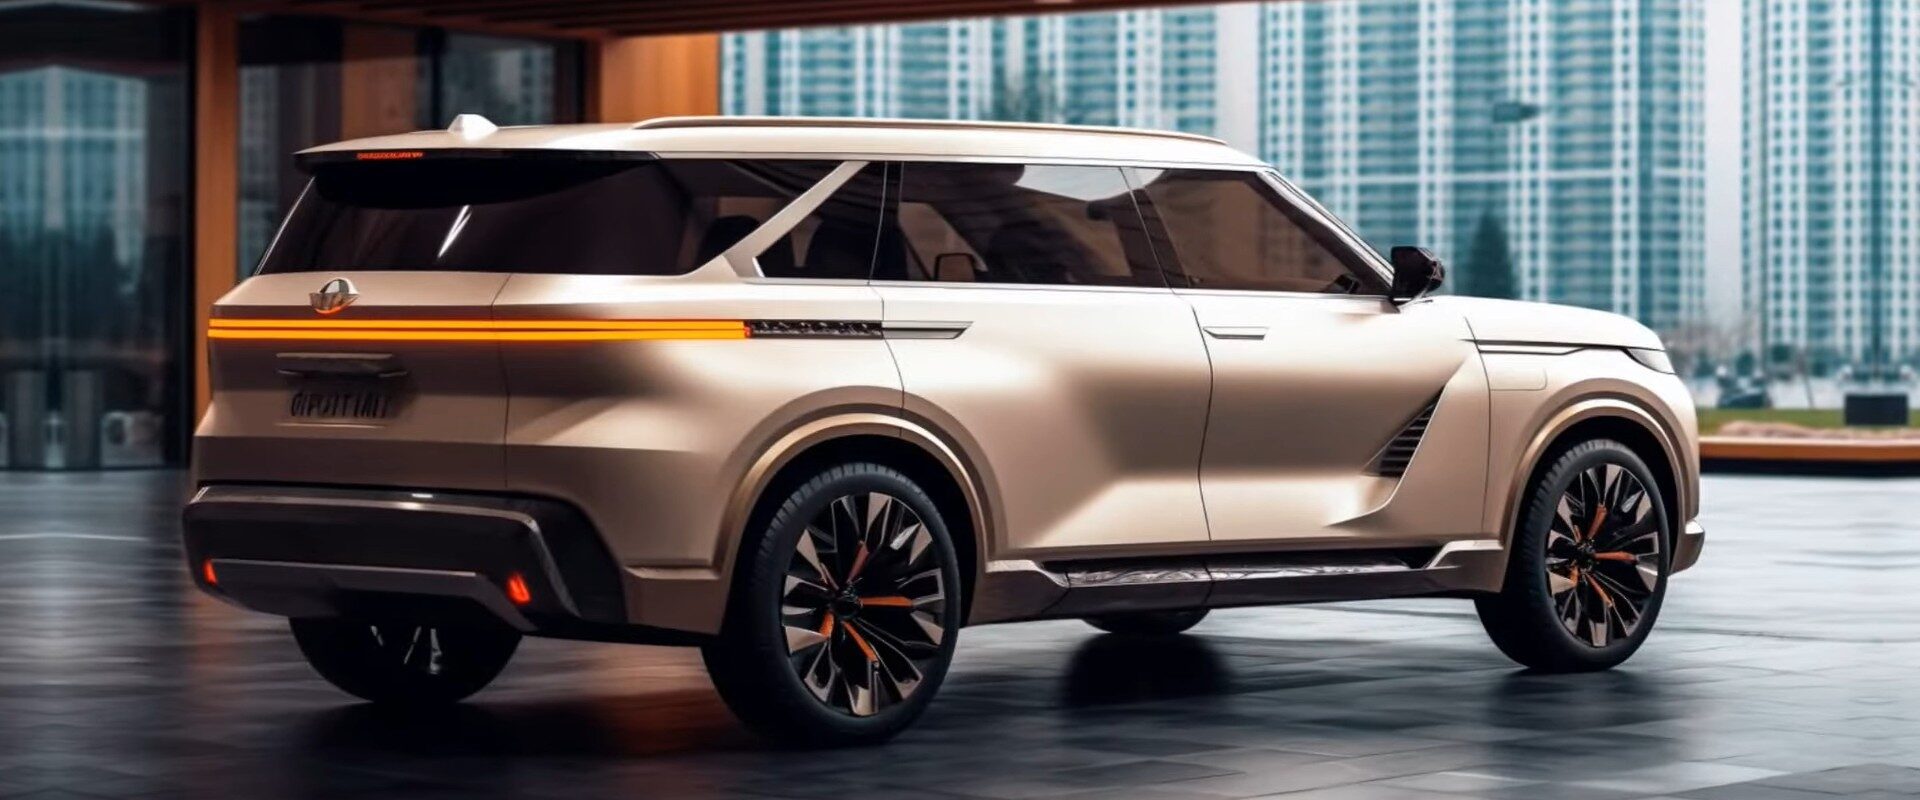 Виртуальный Nissan Patrol 2025 года чувствует себя воином-следопытом армады третьего поколения